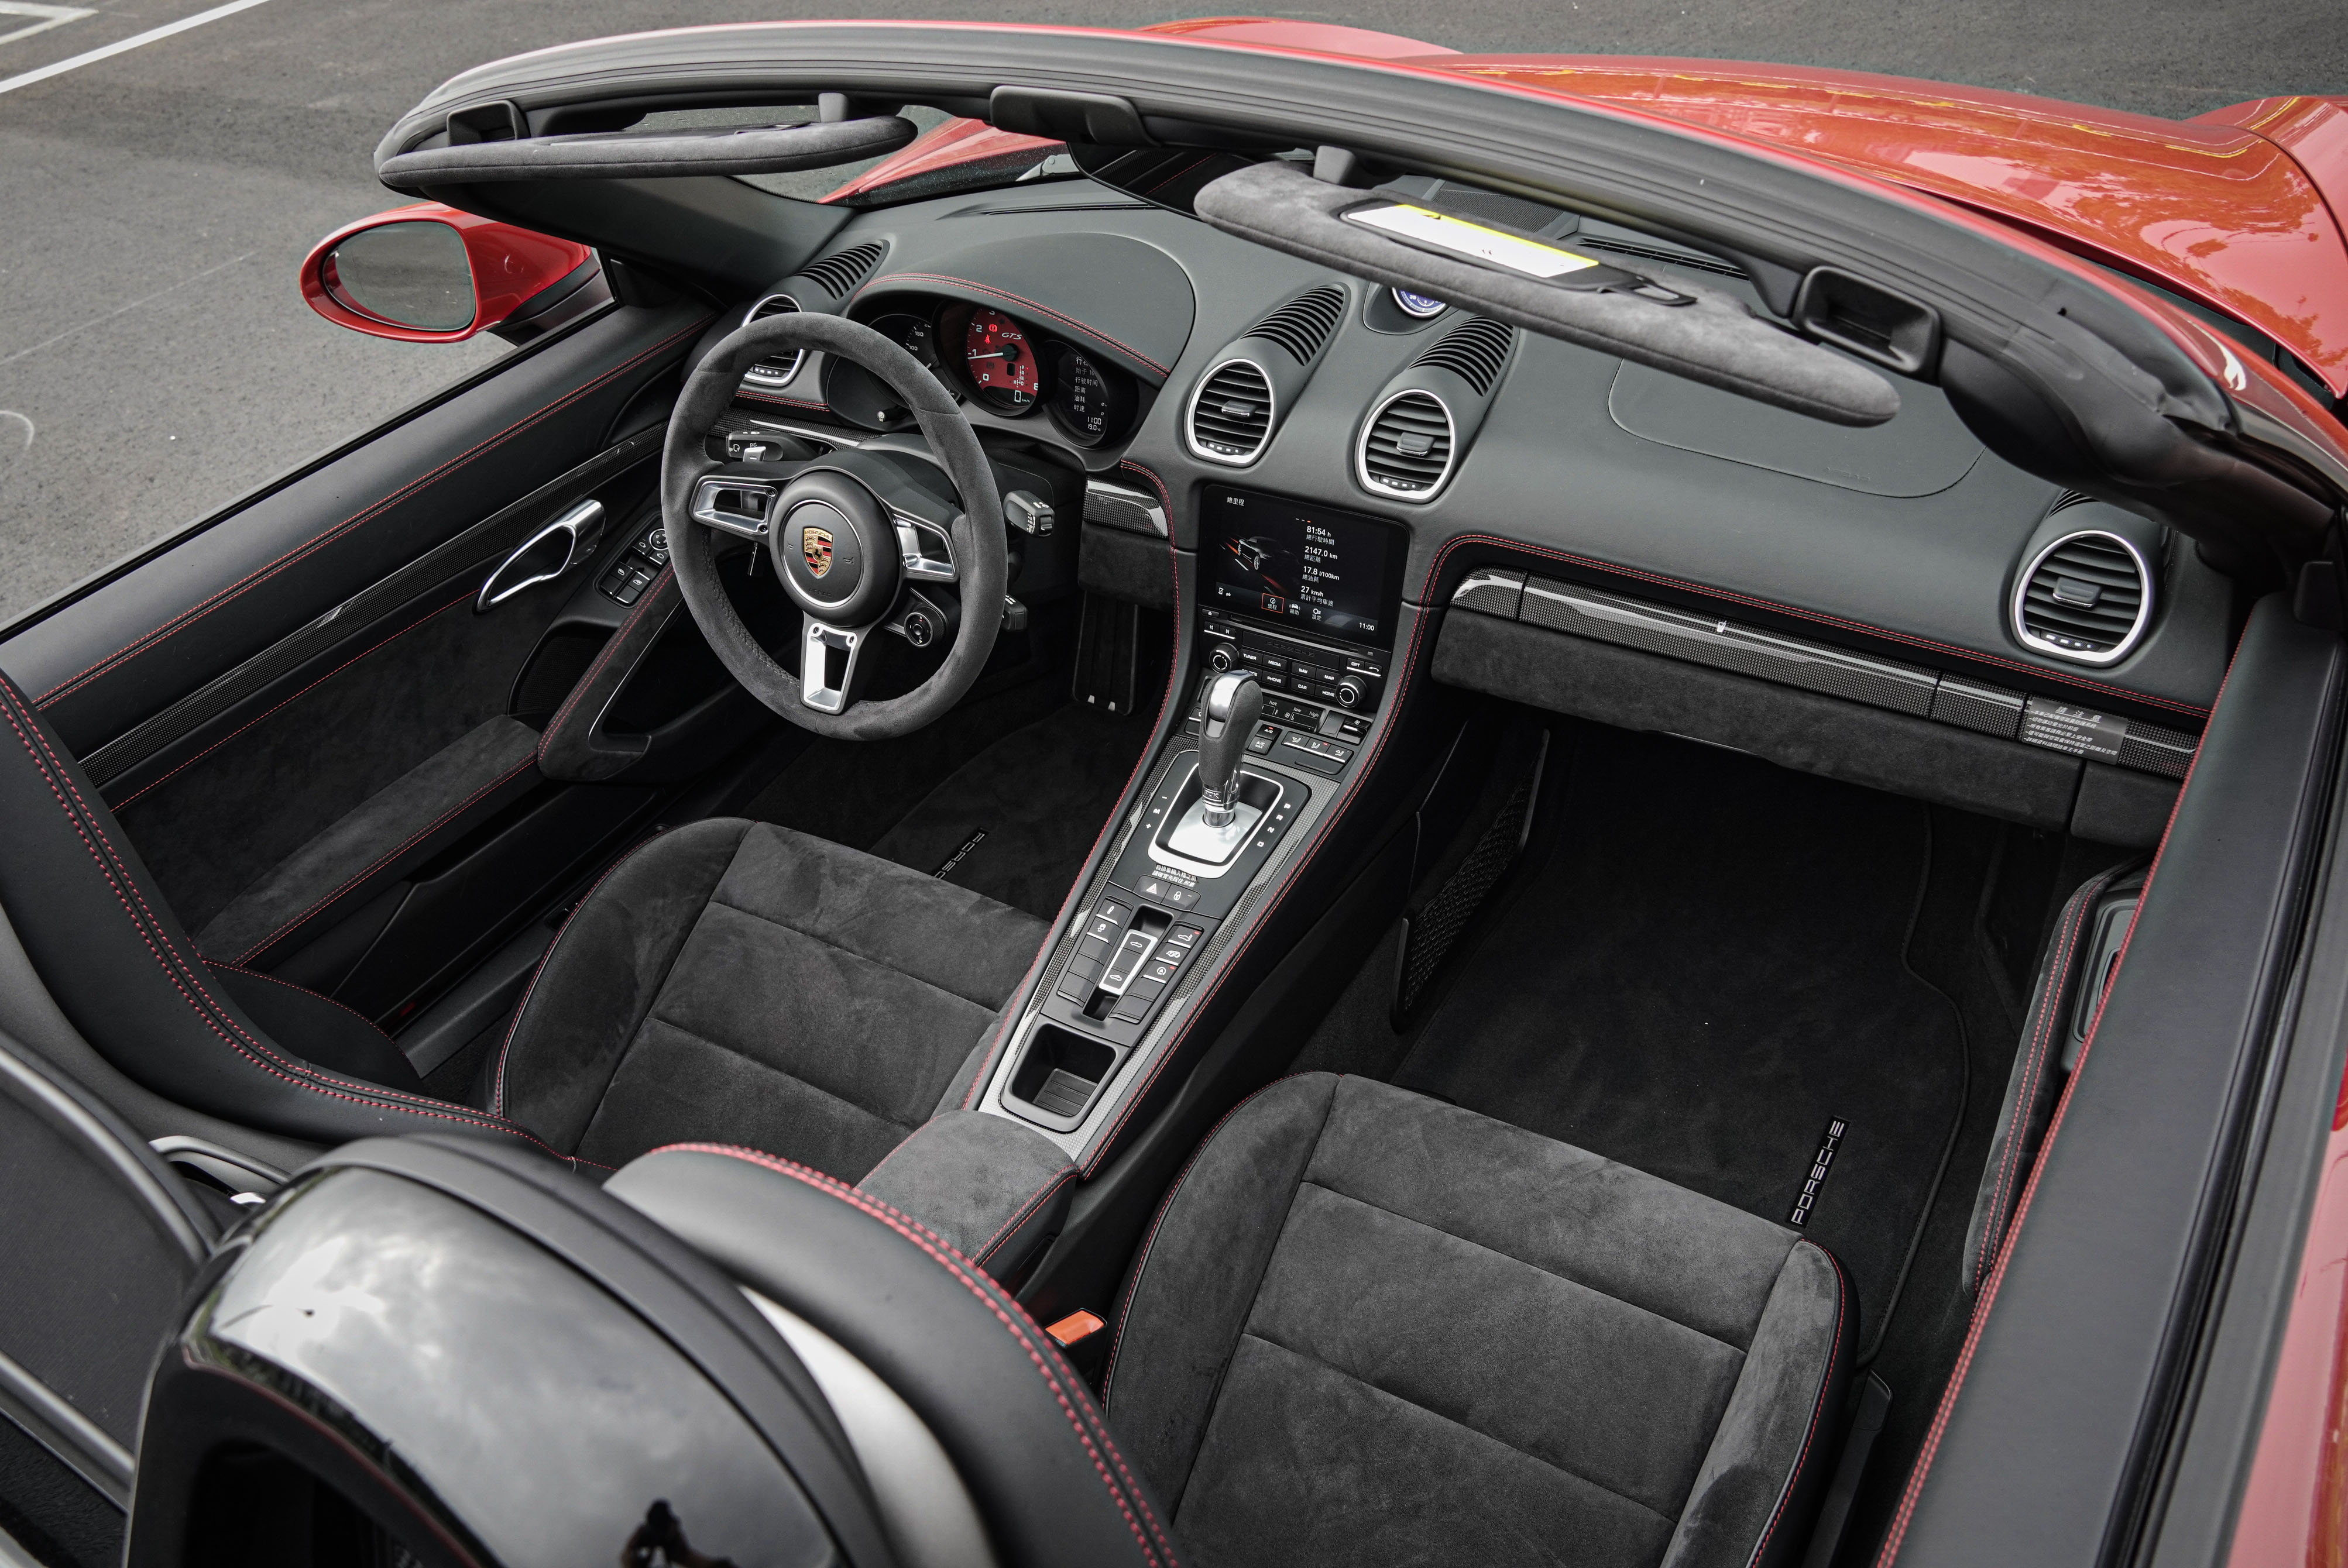 試駕的 Boxster GTS 內裝選配 GTS 專屬胭脂紅色縫線麂皮內裝套件。